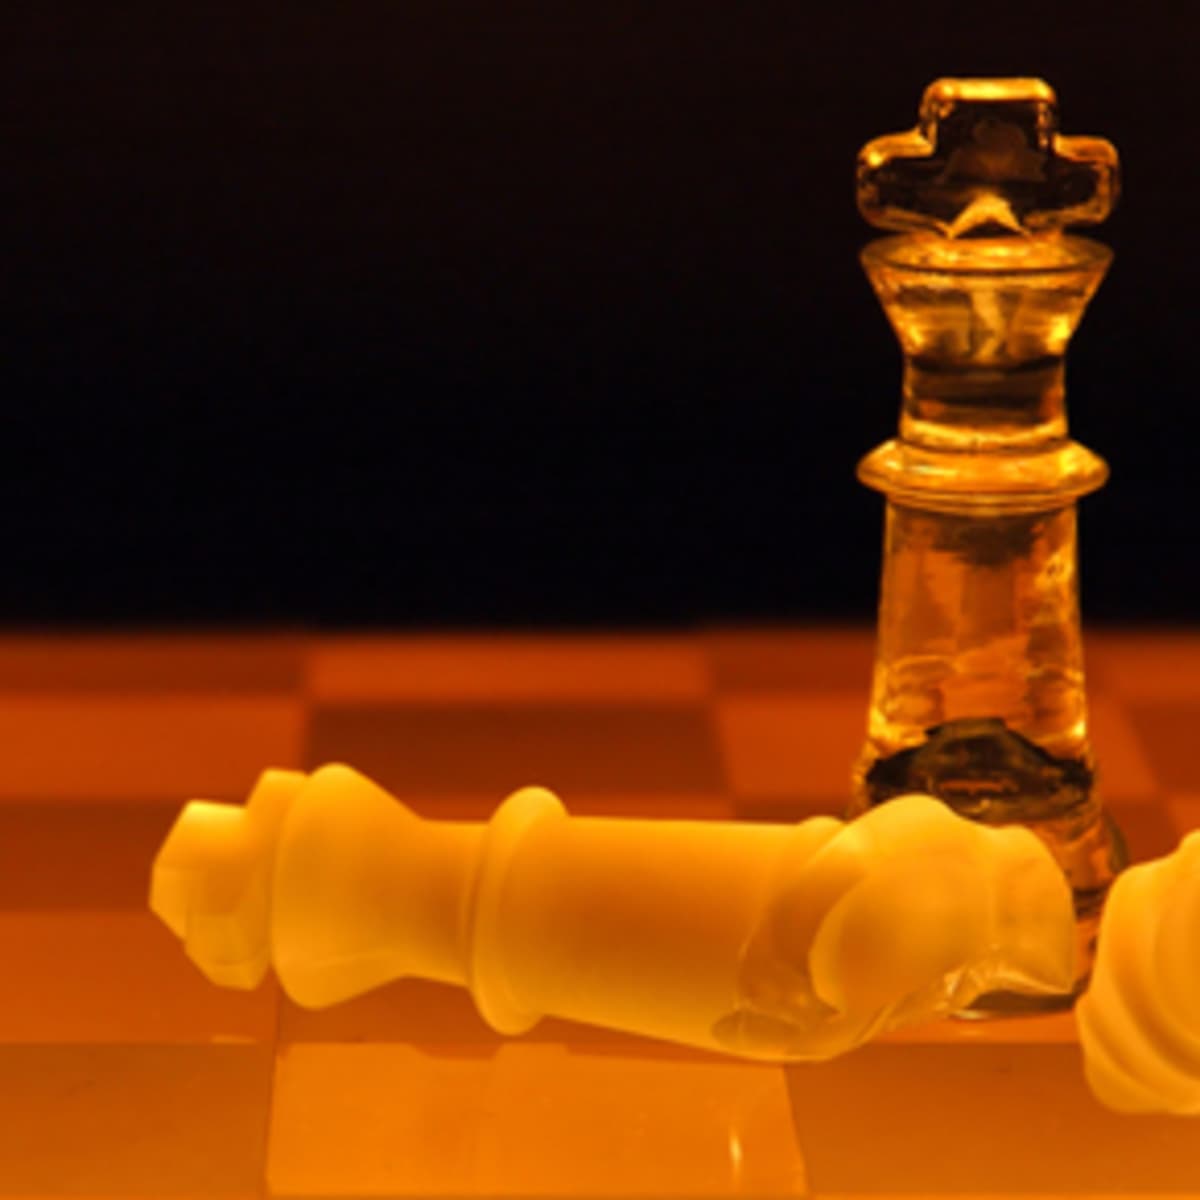 5 Best Electronic Chess Games - HobbyLark